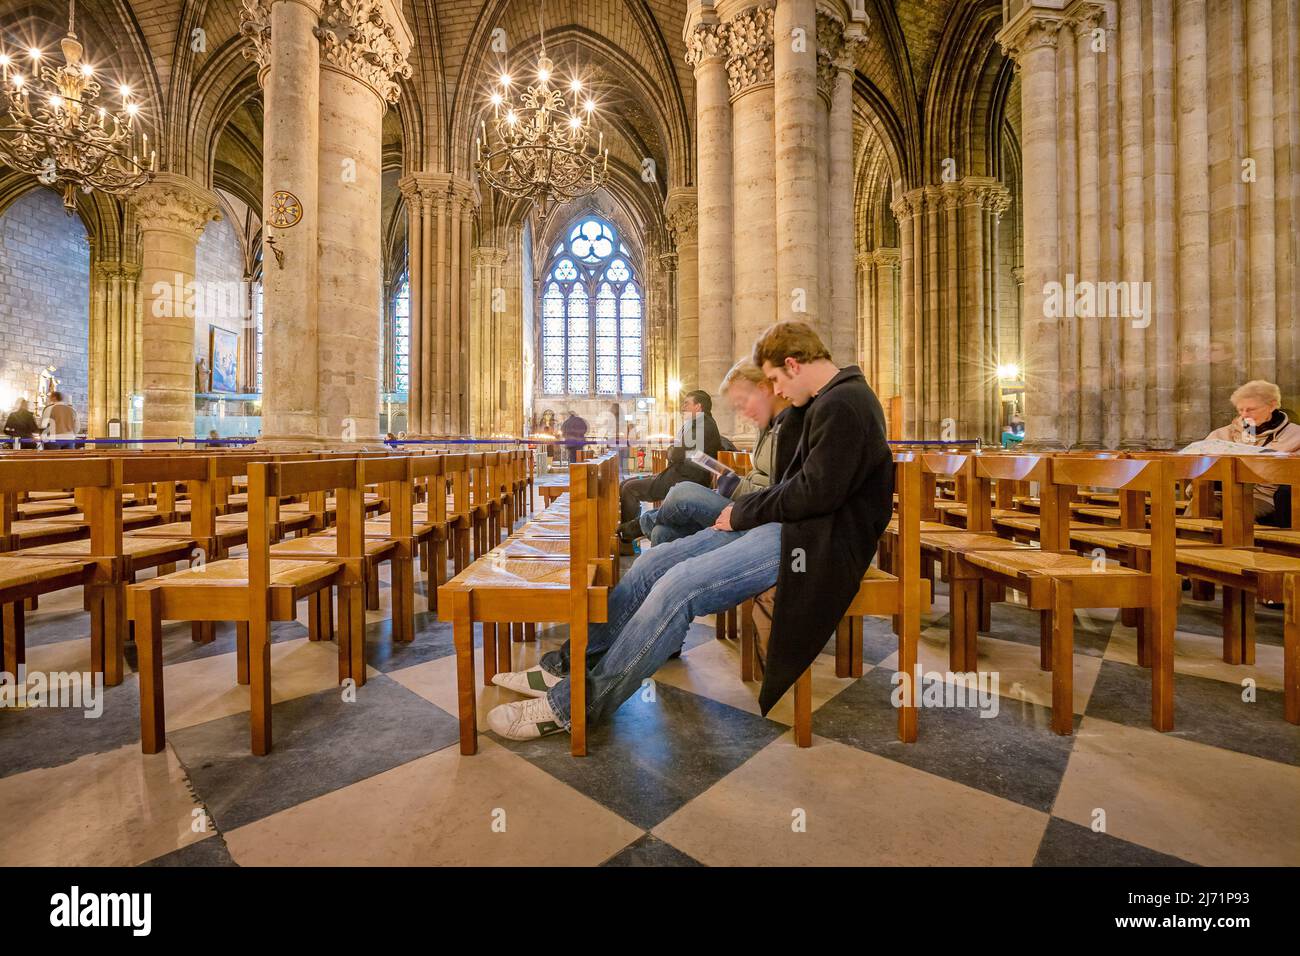 La gente se sienta dentro de la Catedral de Notre Dame en París, Francia Foto de stock